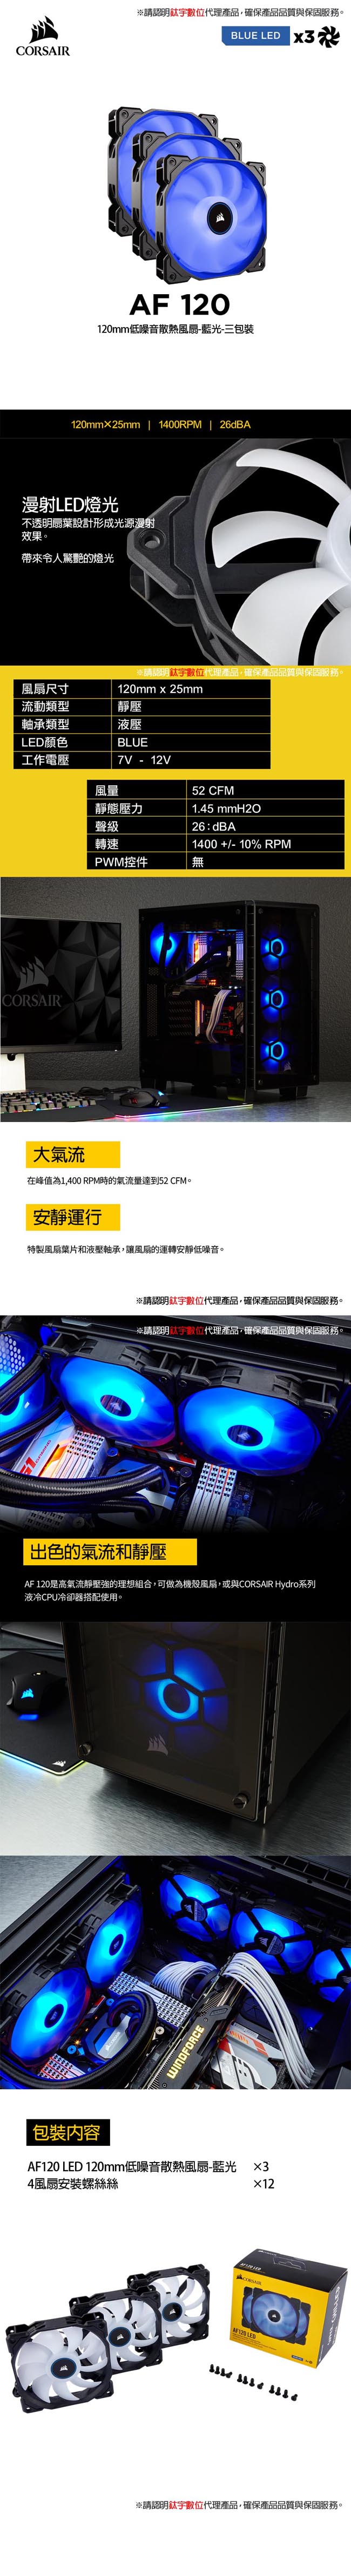 【CORSAIR】AF120 LED 120mm低噪音散熱風扇-藍光-三包裝